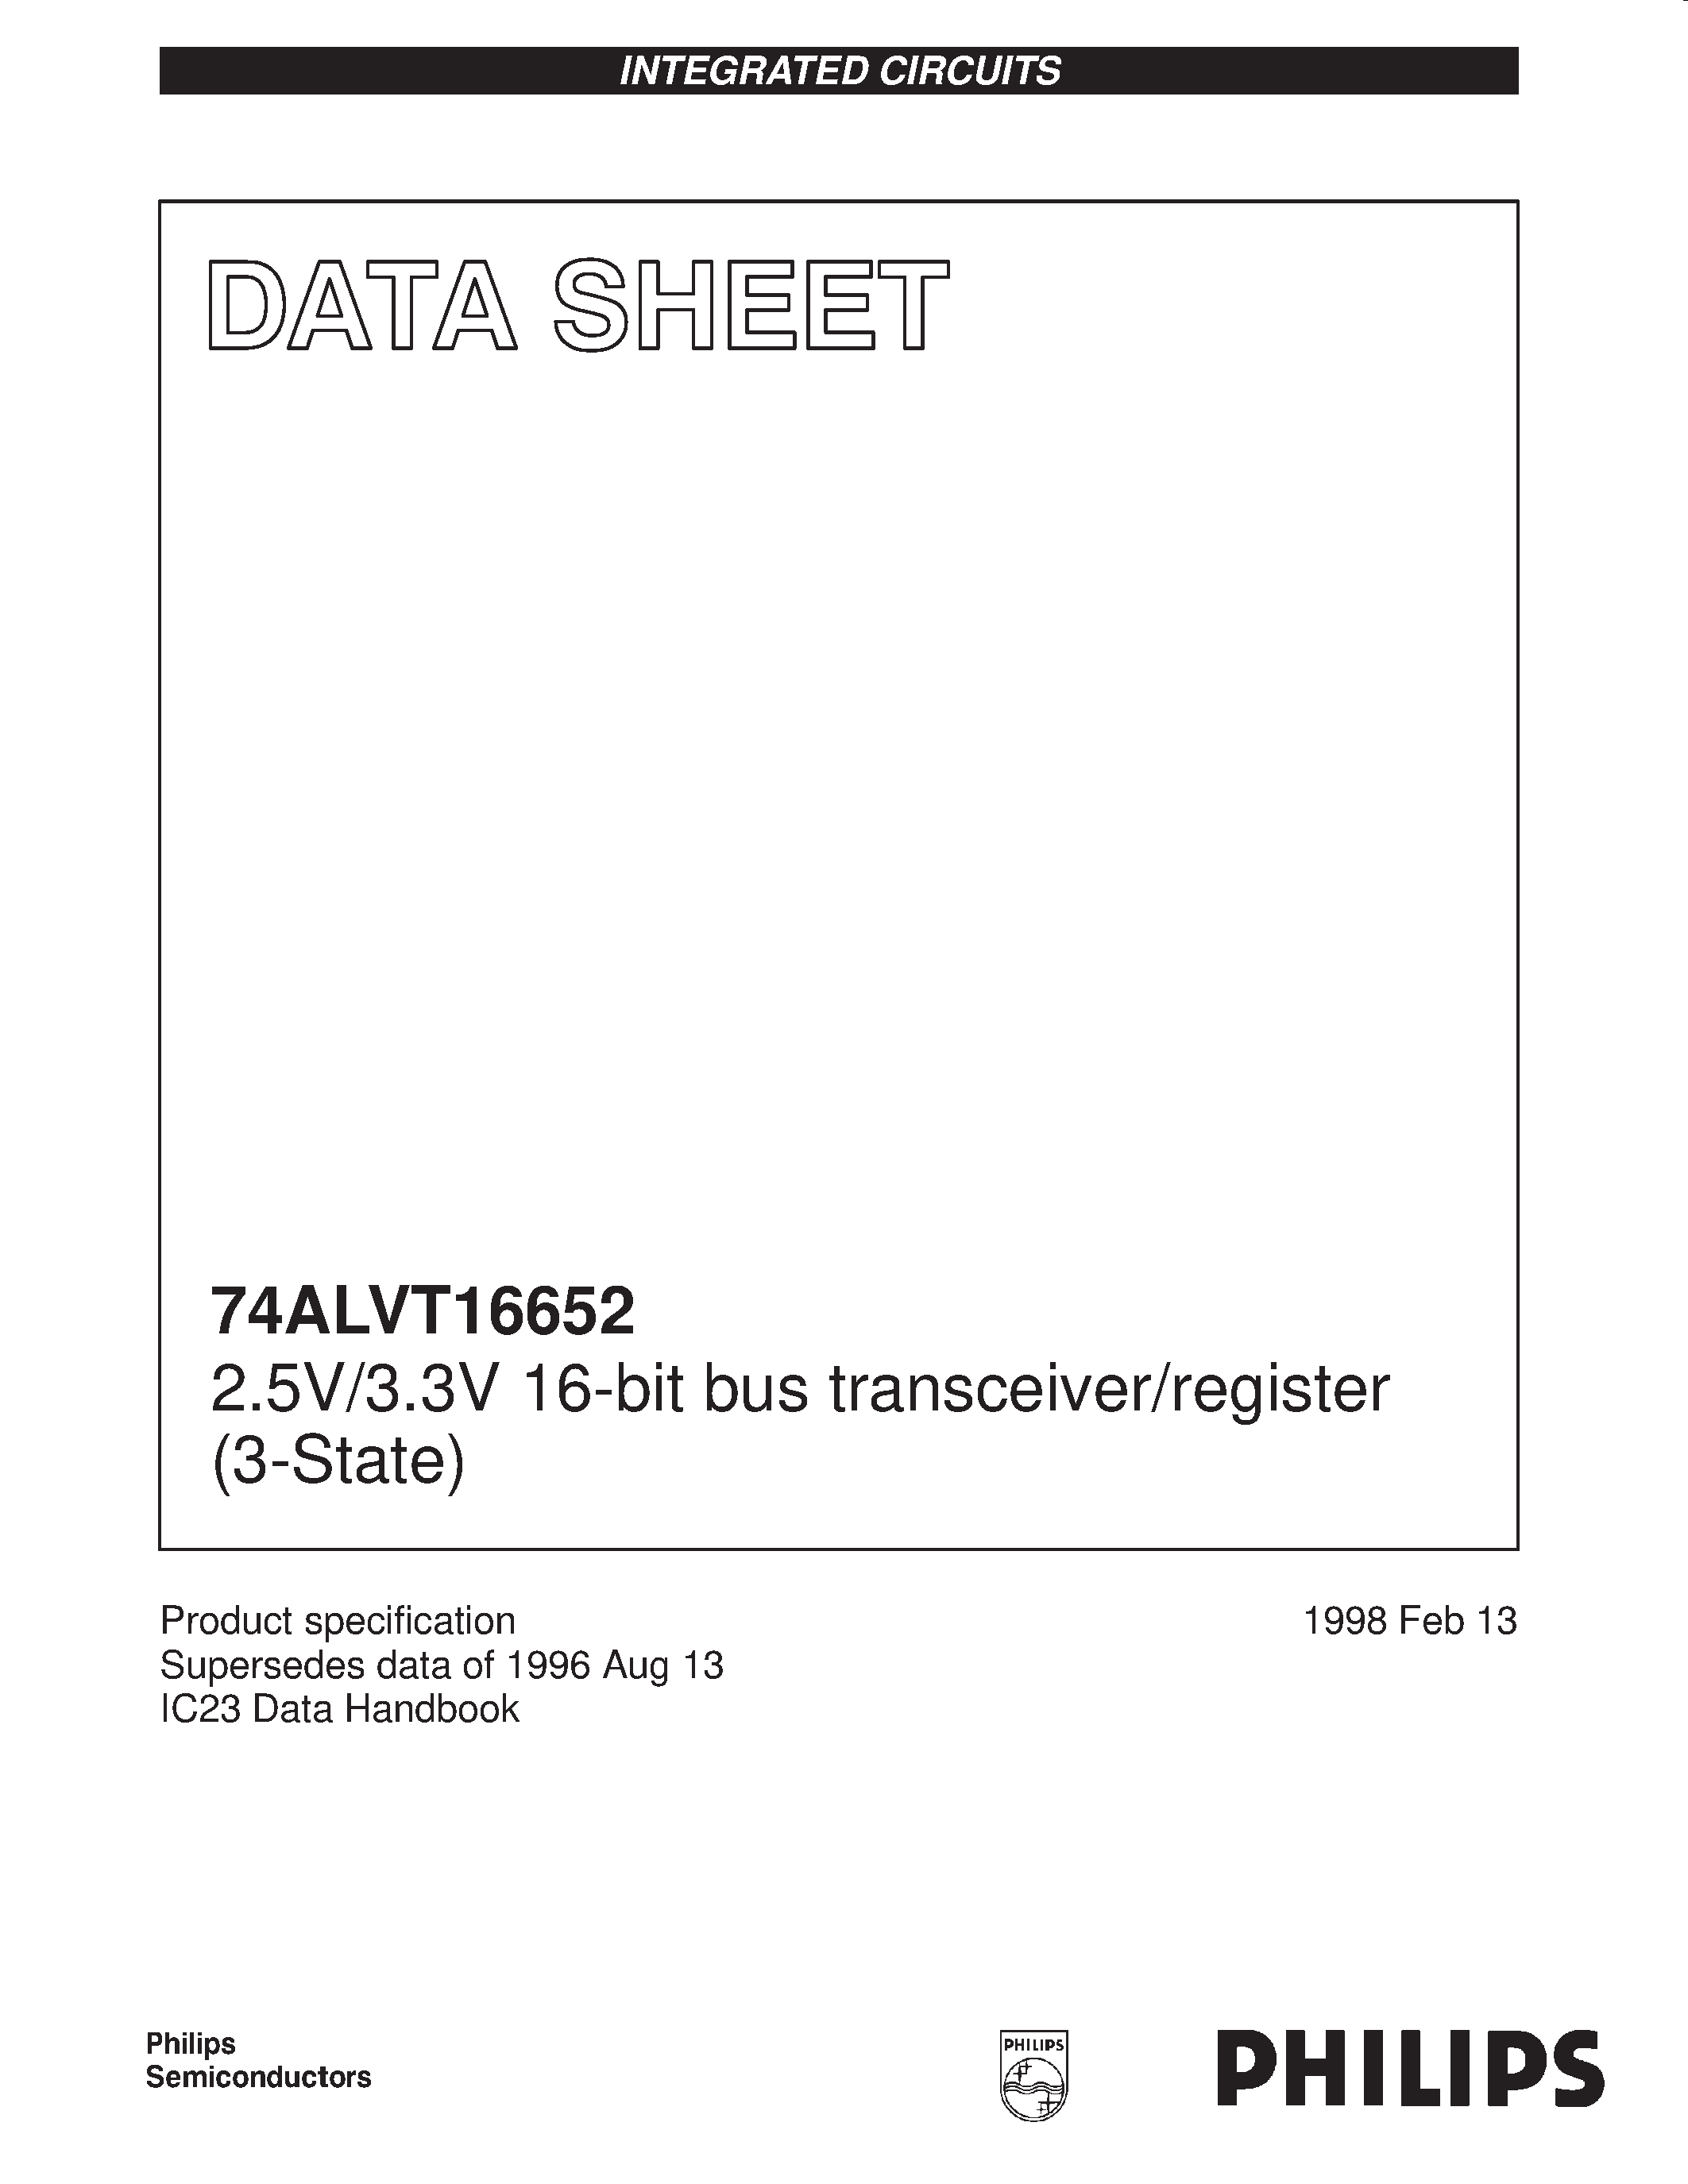 Даташит 74ALVT16652 - 2.5V/3.3V 16-bit bus transceiver/register 3-State страница 1